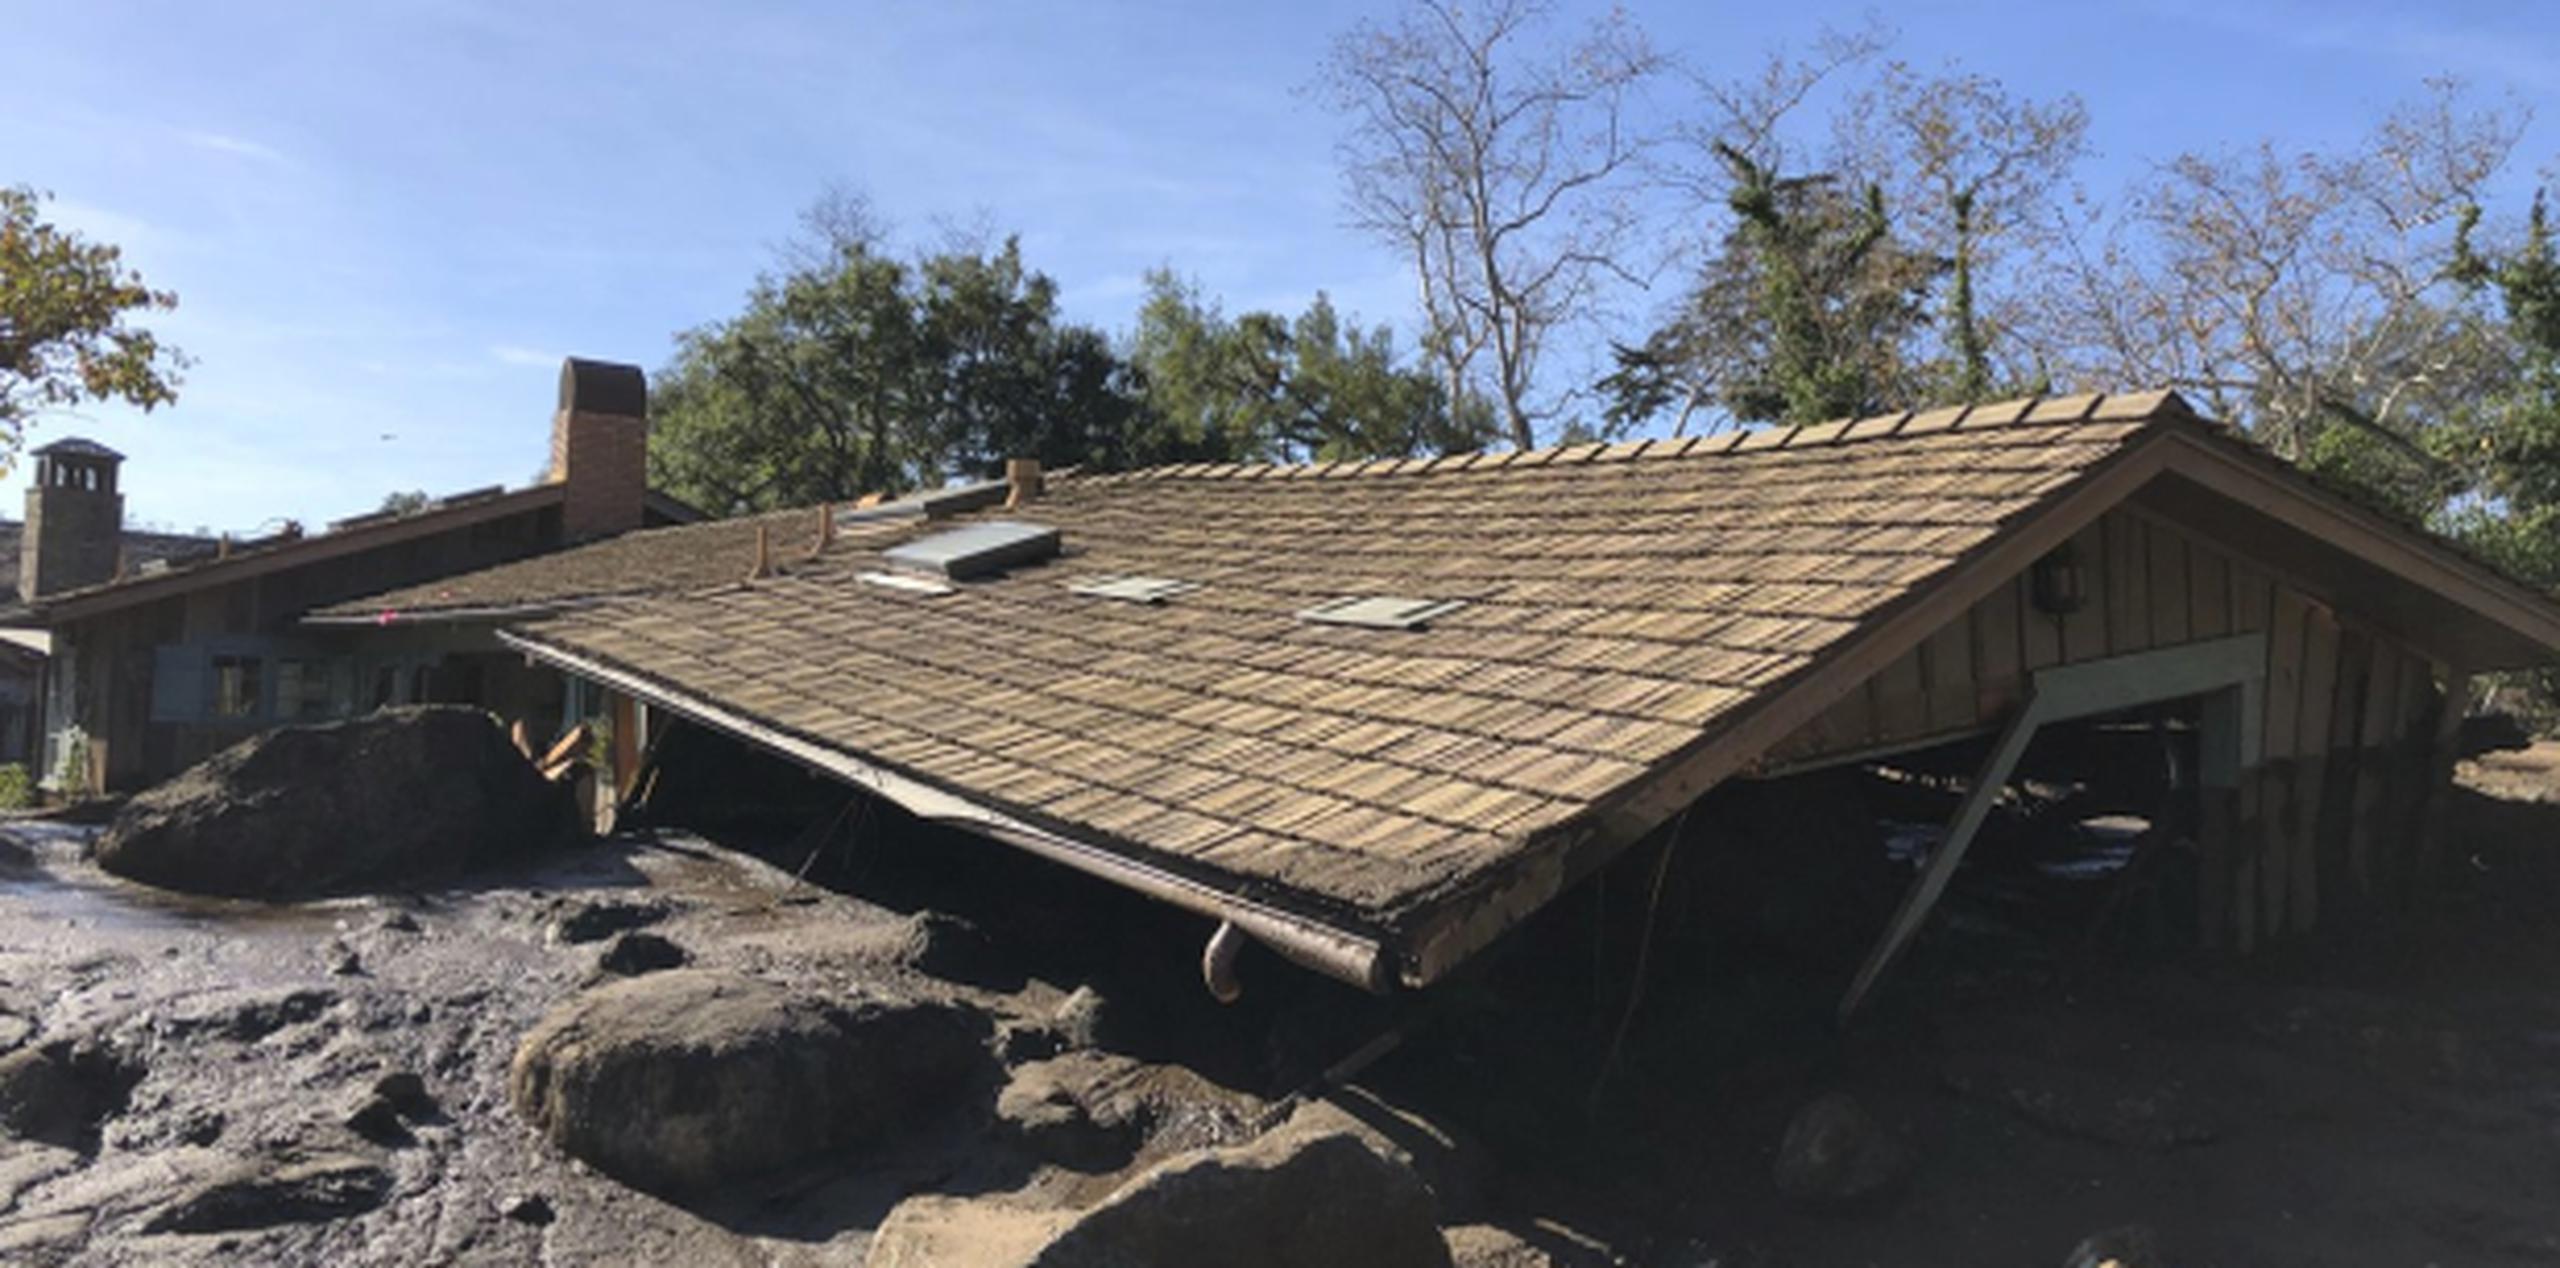 Cerca de 100 viviendas fueron destruidas y 300 más sufrieron daños. (Mike Eliason / Departamento de Bomberos del condado de Santa Bárbara vía AP)